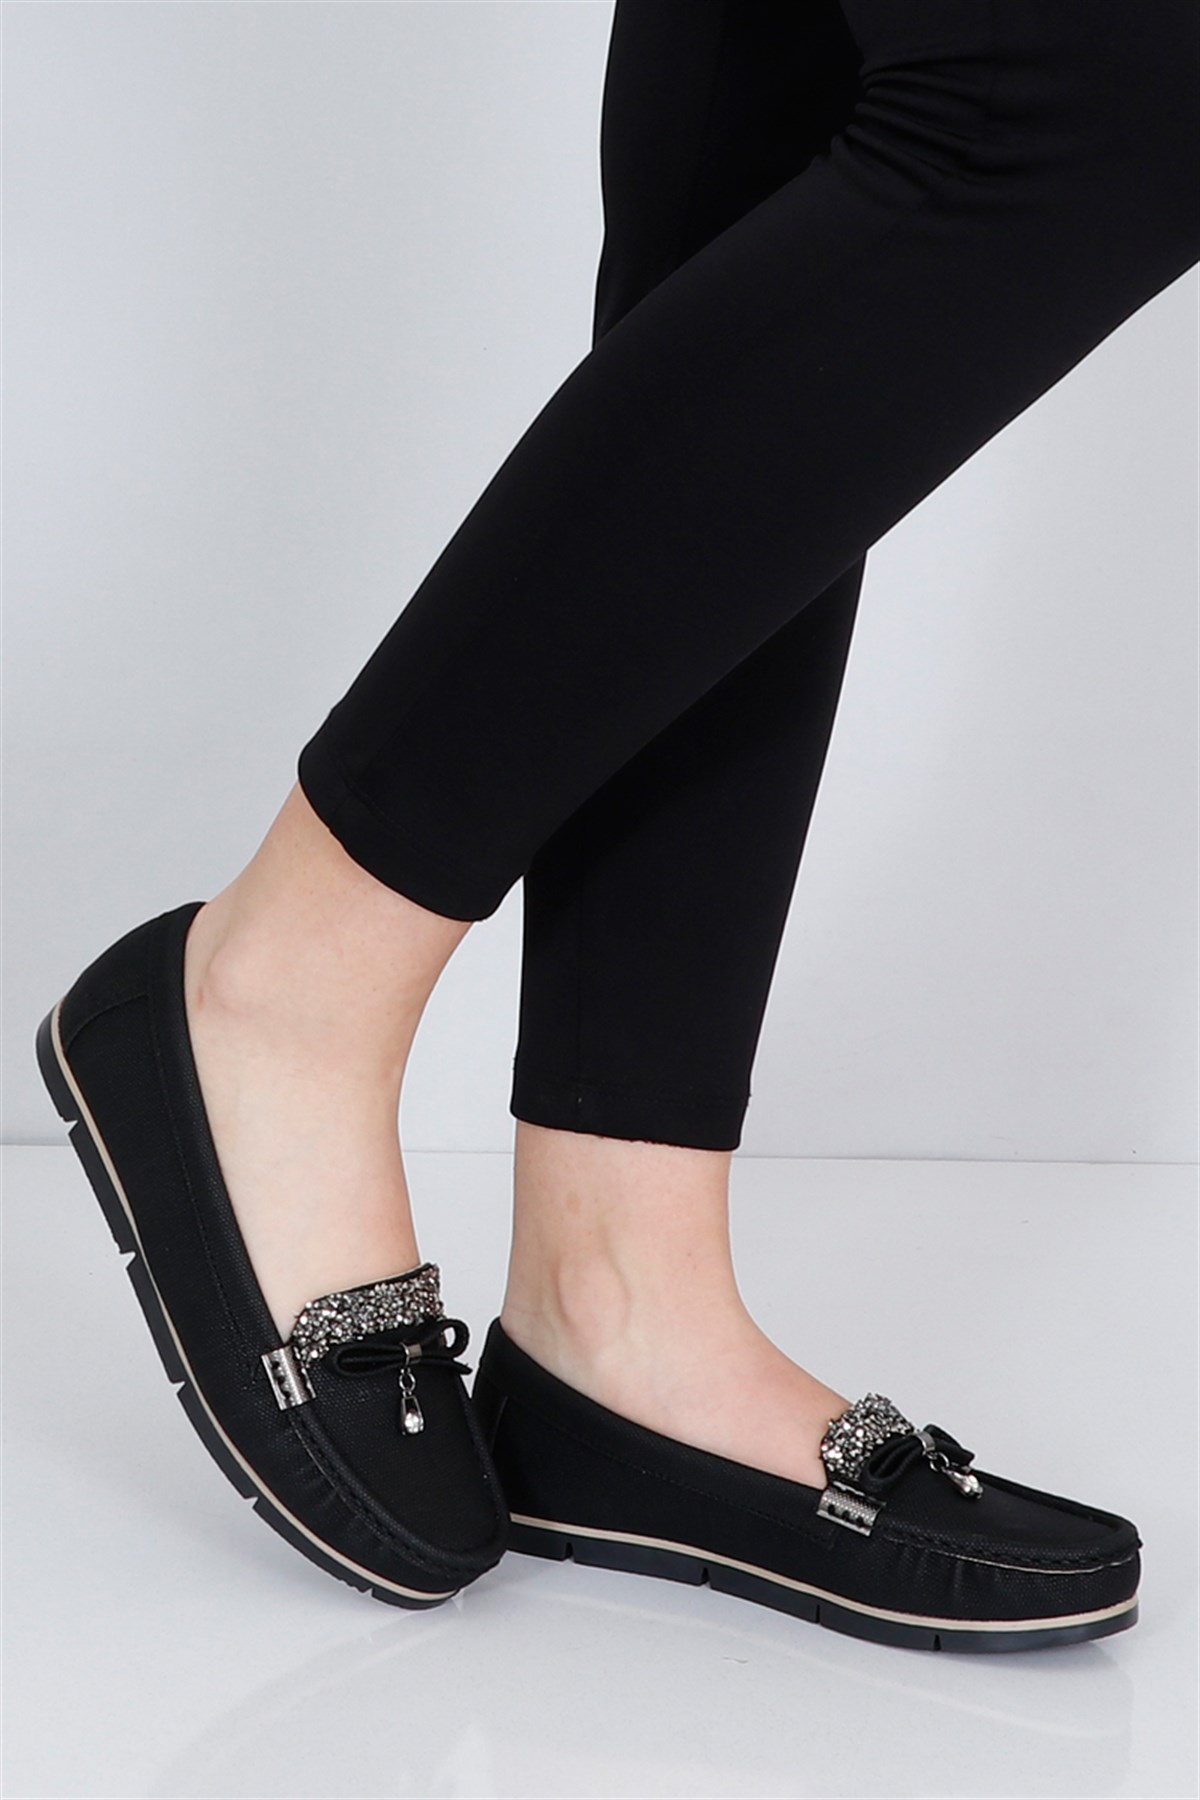 Siyah kot Kadın Babet Ayakkabı 300 Fiyatı ve Modelleri